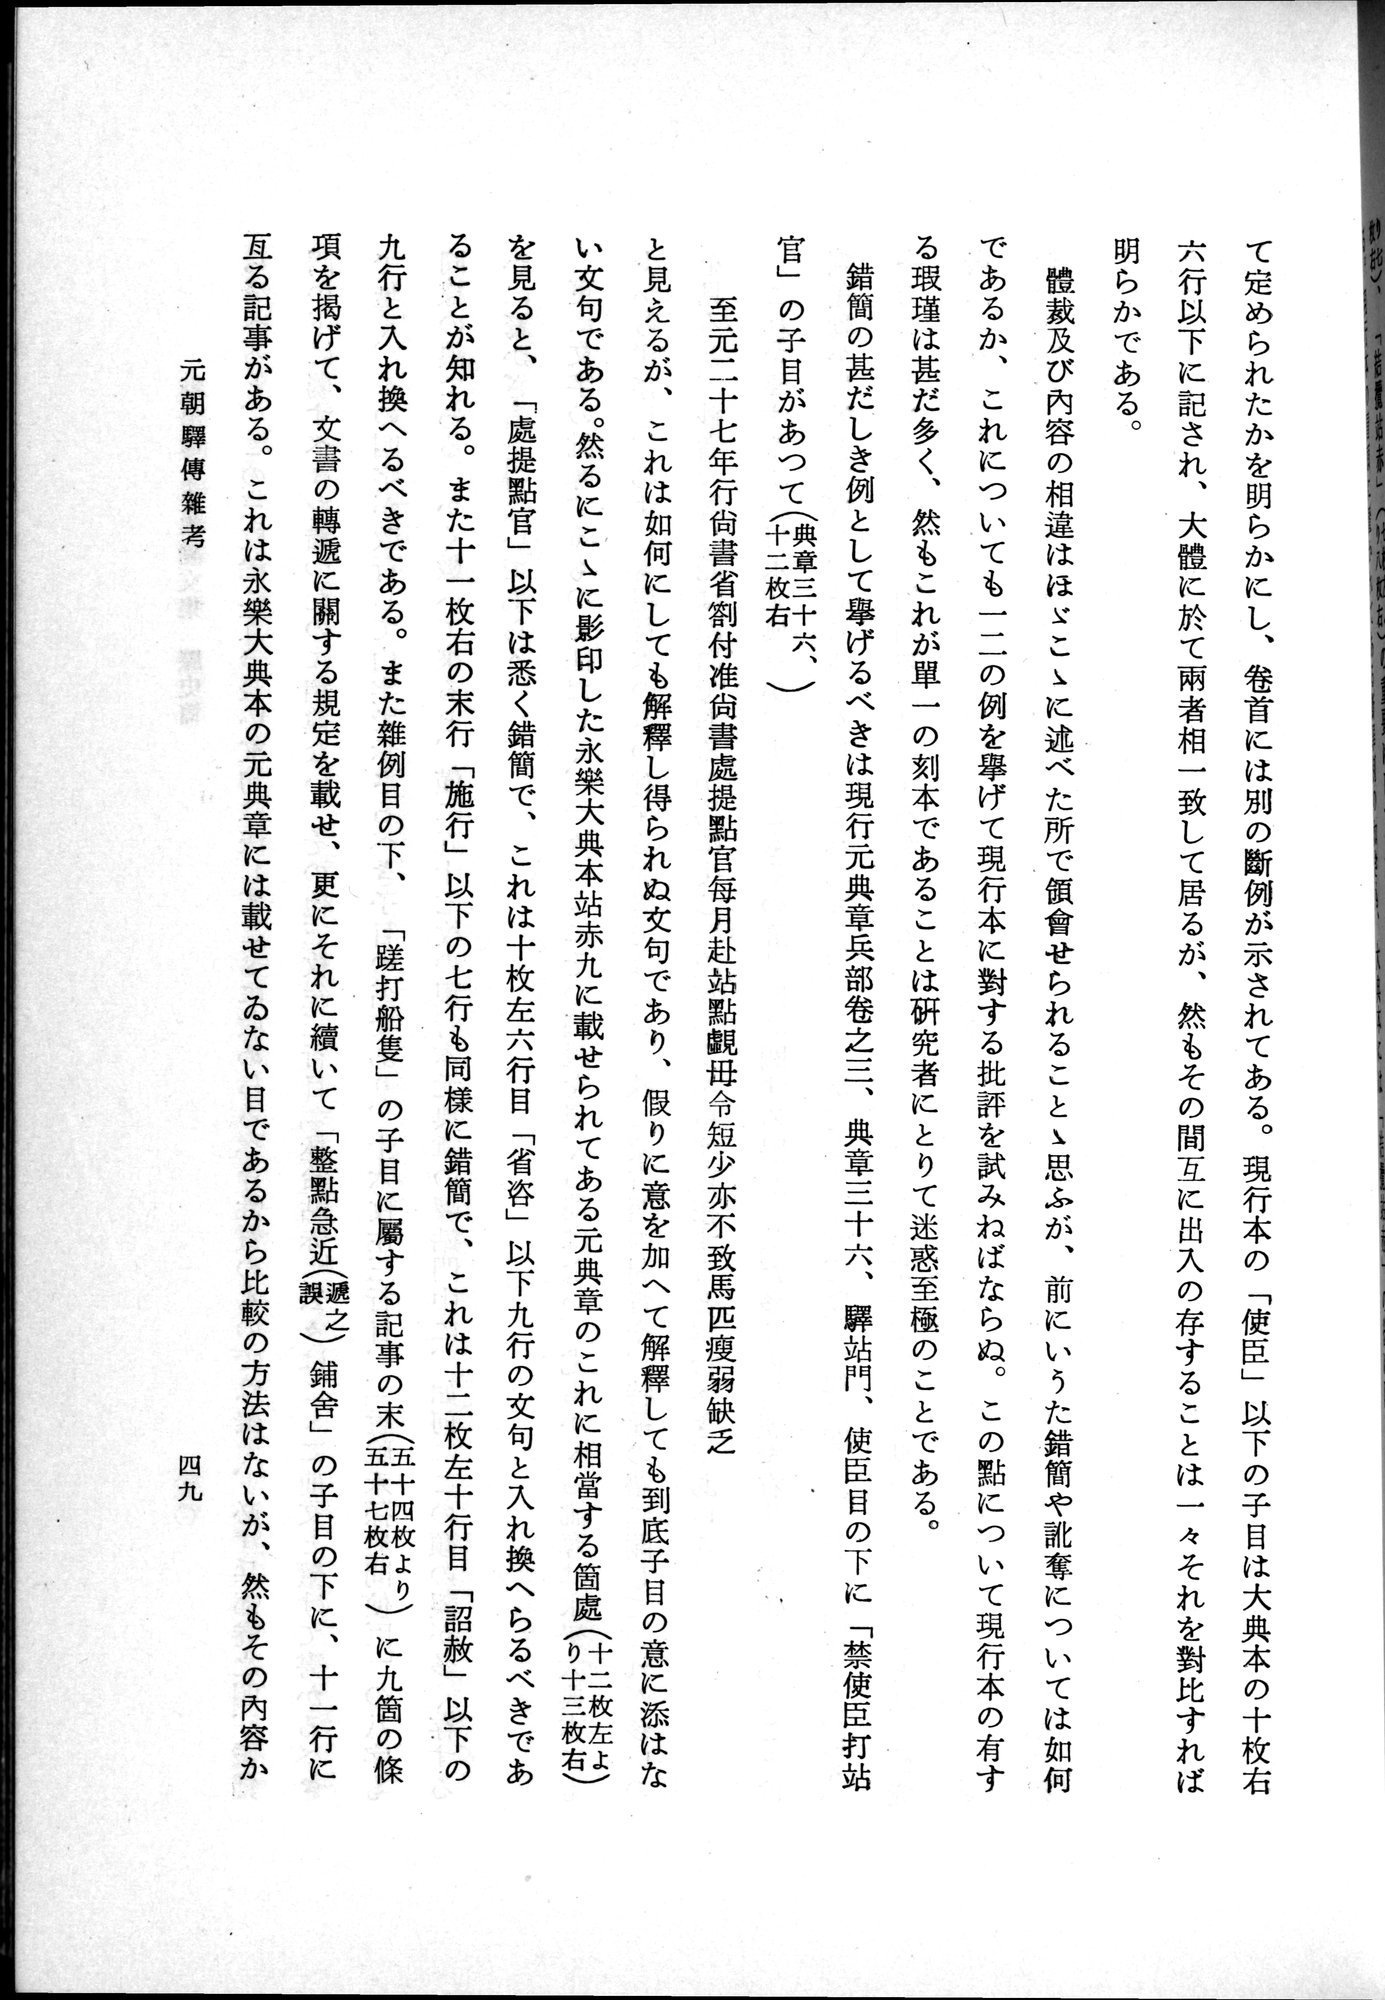 羽田博士史学論文集 : vol.1 / Page 87 (Grayscale High Resolution Image)